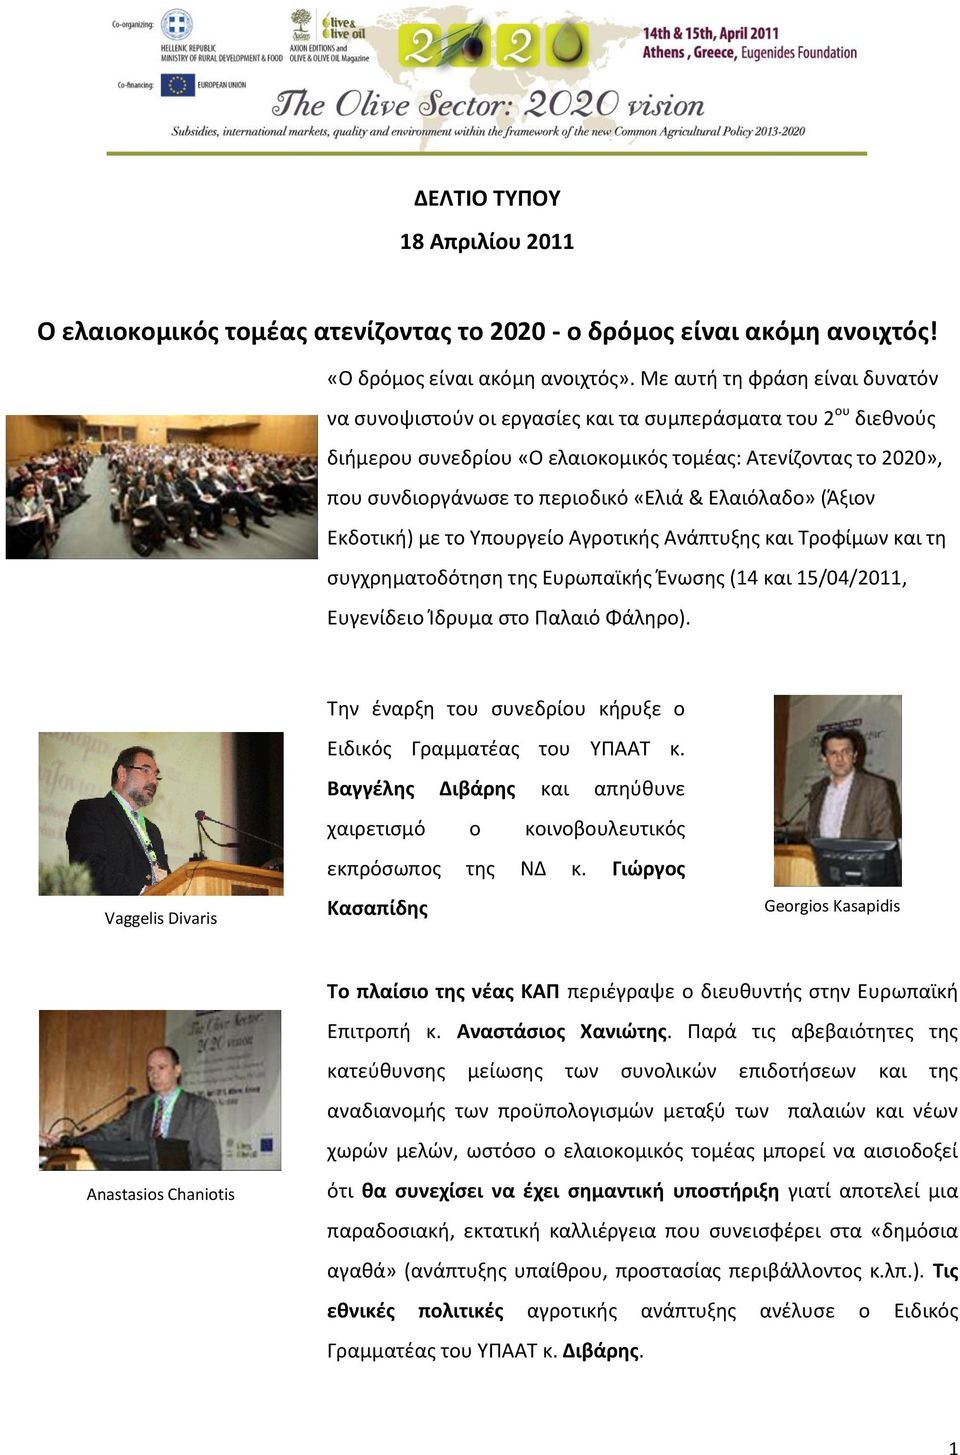 Ελαιόλαδο» (Άξιον Εκδοτική) με το Υπουργείο Αγροτικής Ανάπτυξης και Τροφίμων και τη συγχρηματοδότηση της Ευρωπαϊκής Ένωσης (14 και 15/04/2011, Ευγενίδειο Ίδρυμα στο Παλαιό Φάληρο).